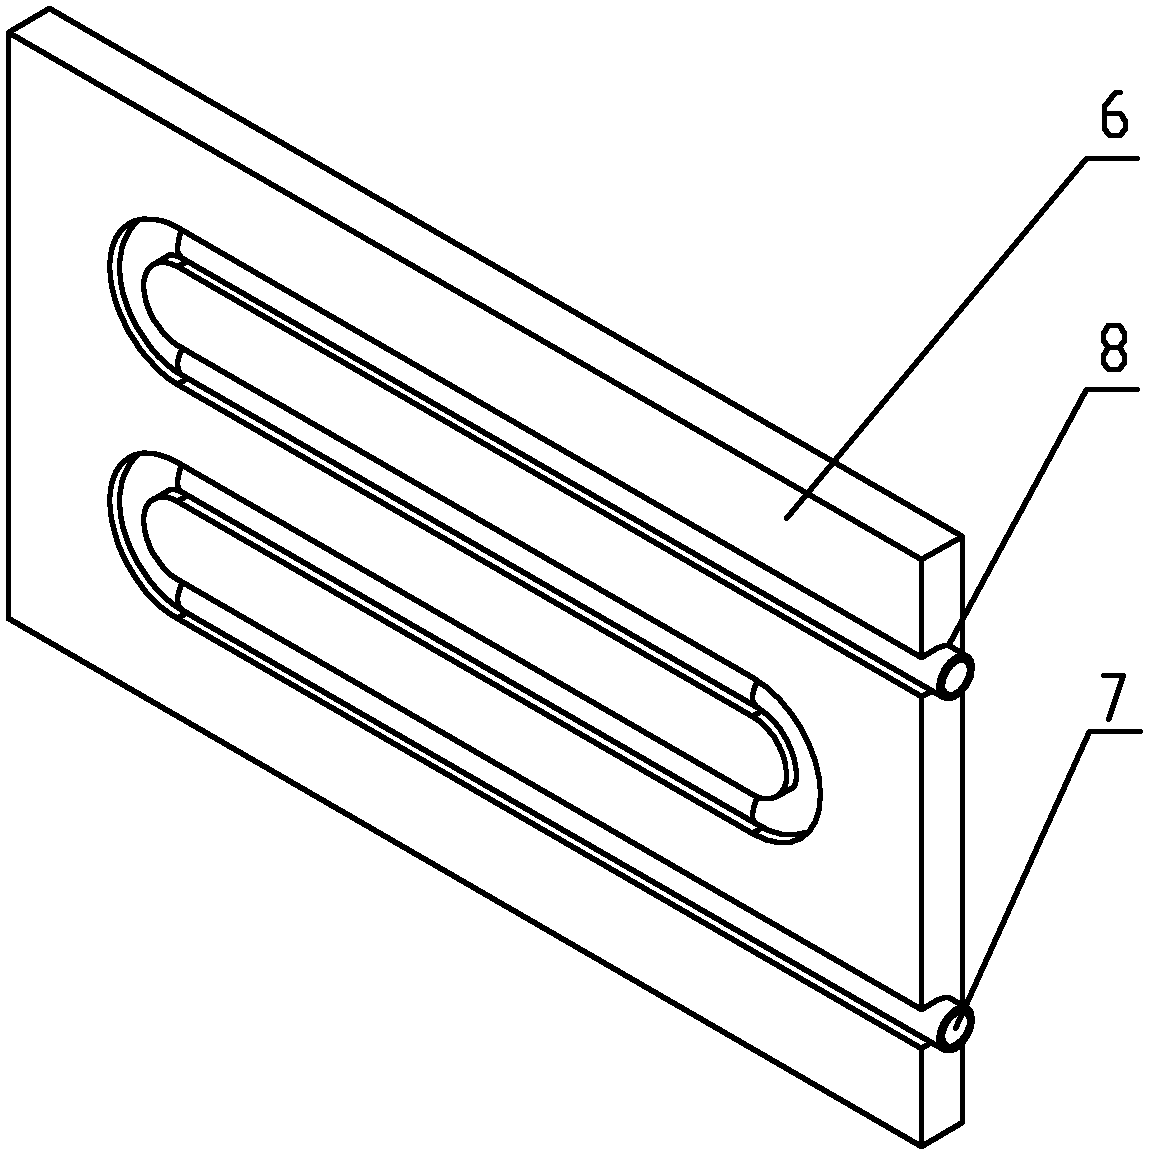 Vacuum brazing process of copper-aluminum (Cu-Al) pipe panel radiator